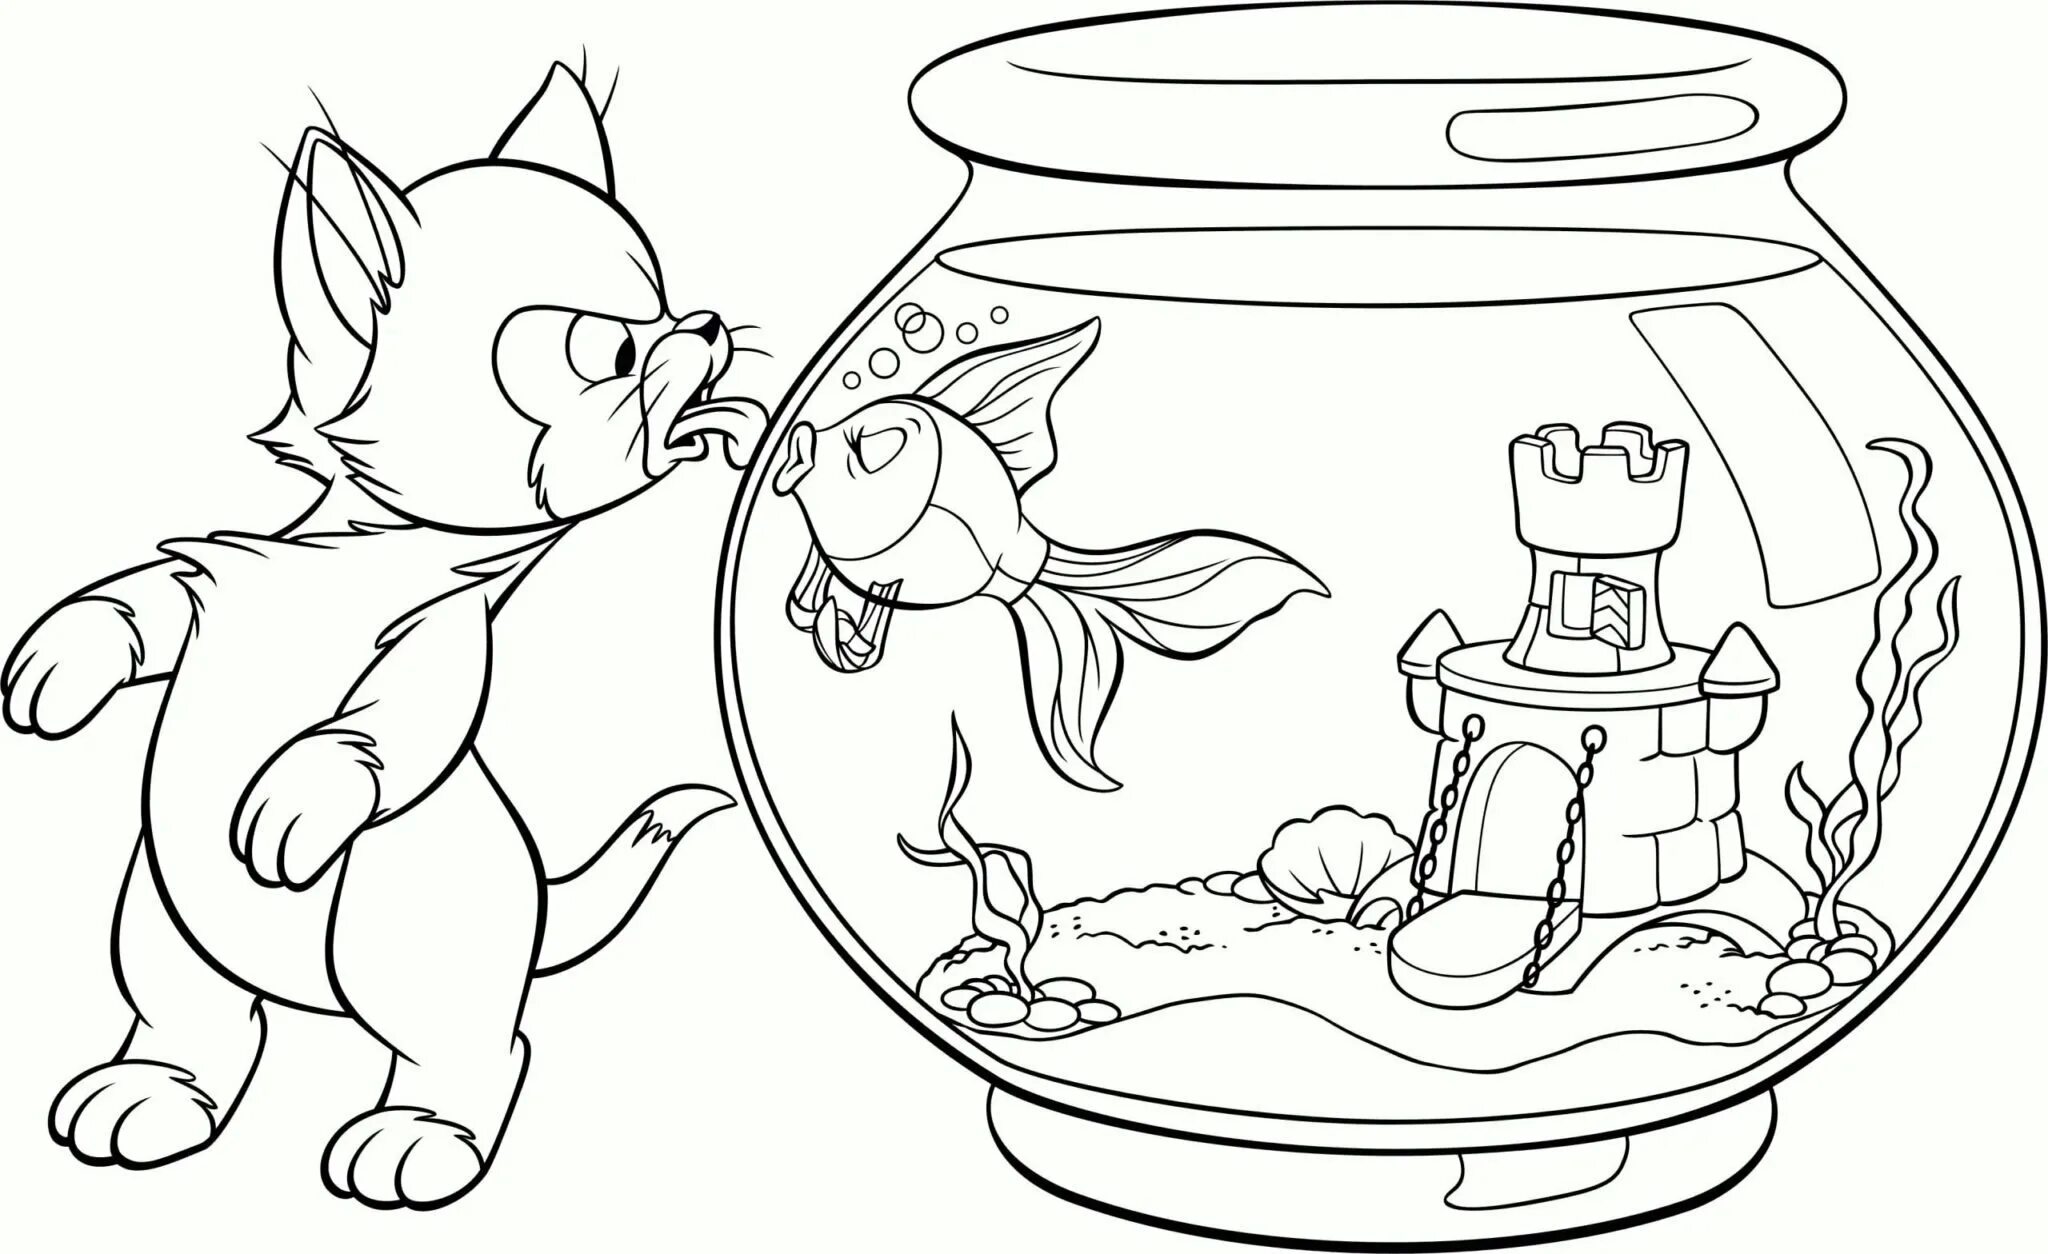 Раскраска а4 10 лет. Раскраска. Рисунки для раскрашивания. Аквариум раскраска. Раскраска аквариум с рыбками для детей.